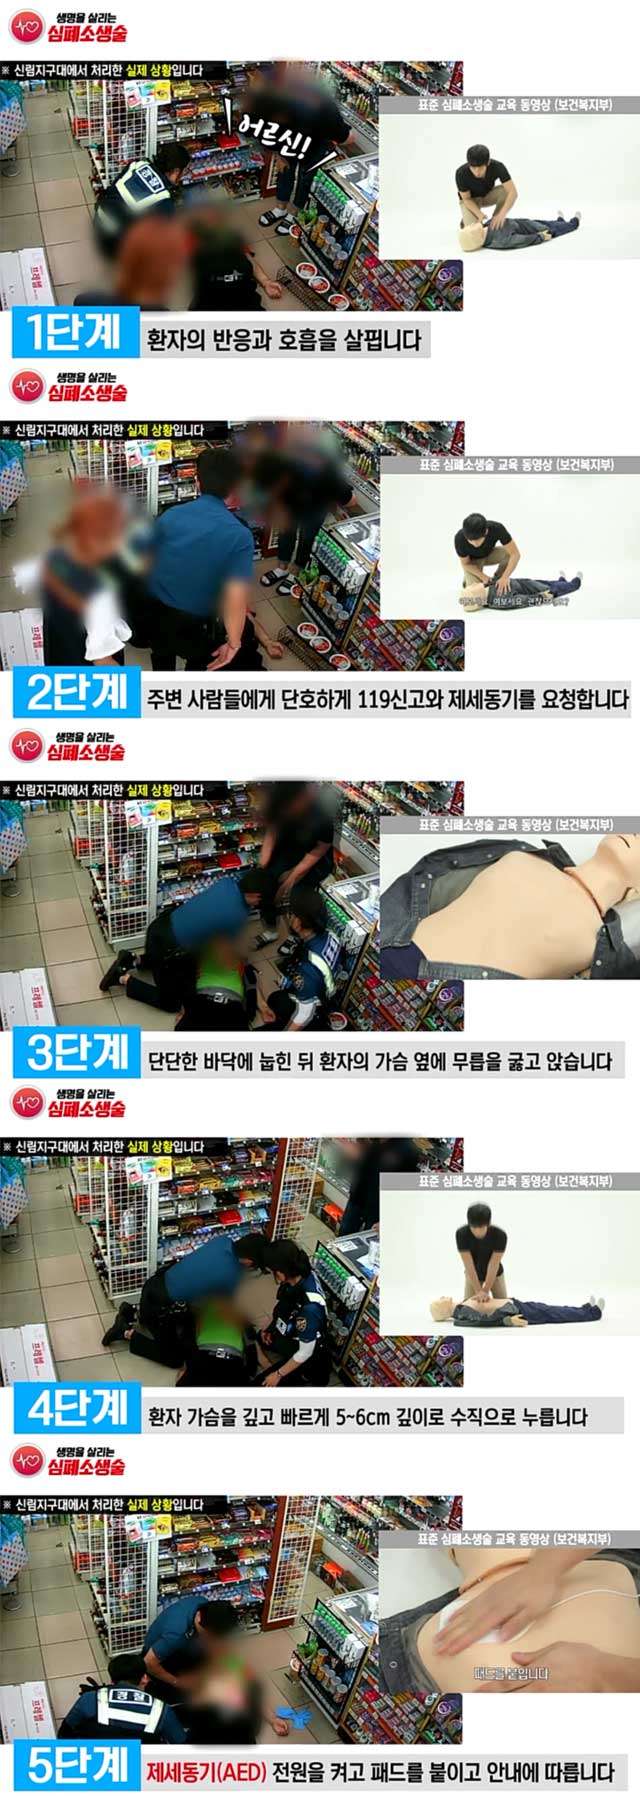 화면출처 : 서울지방경찰청 페이스북 ‘서울경찰’